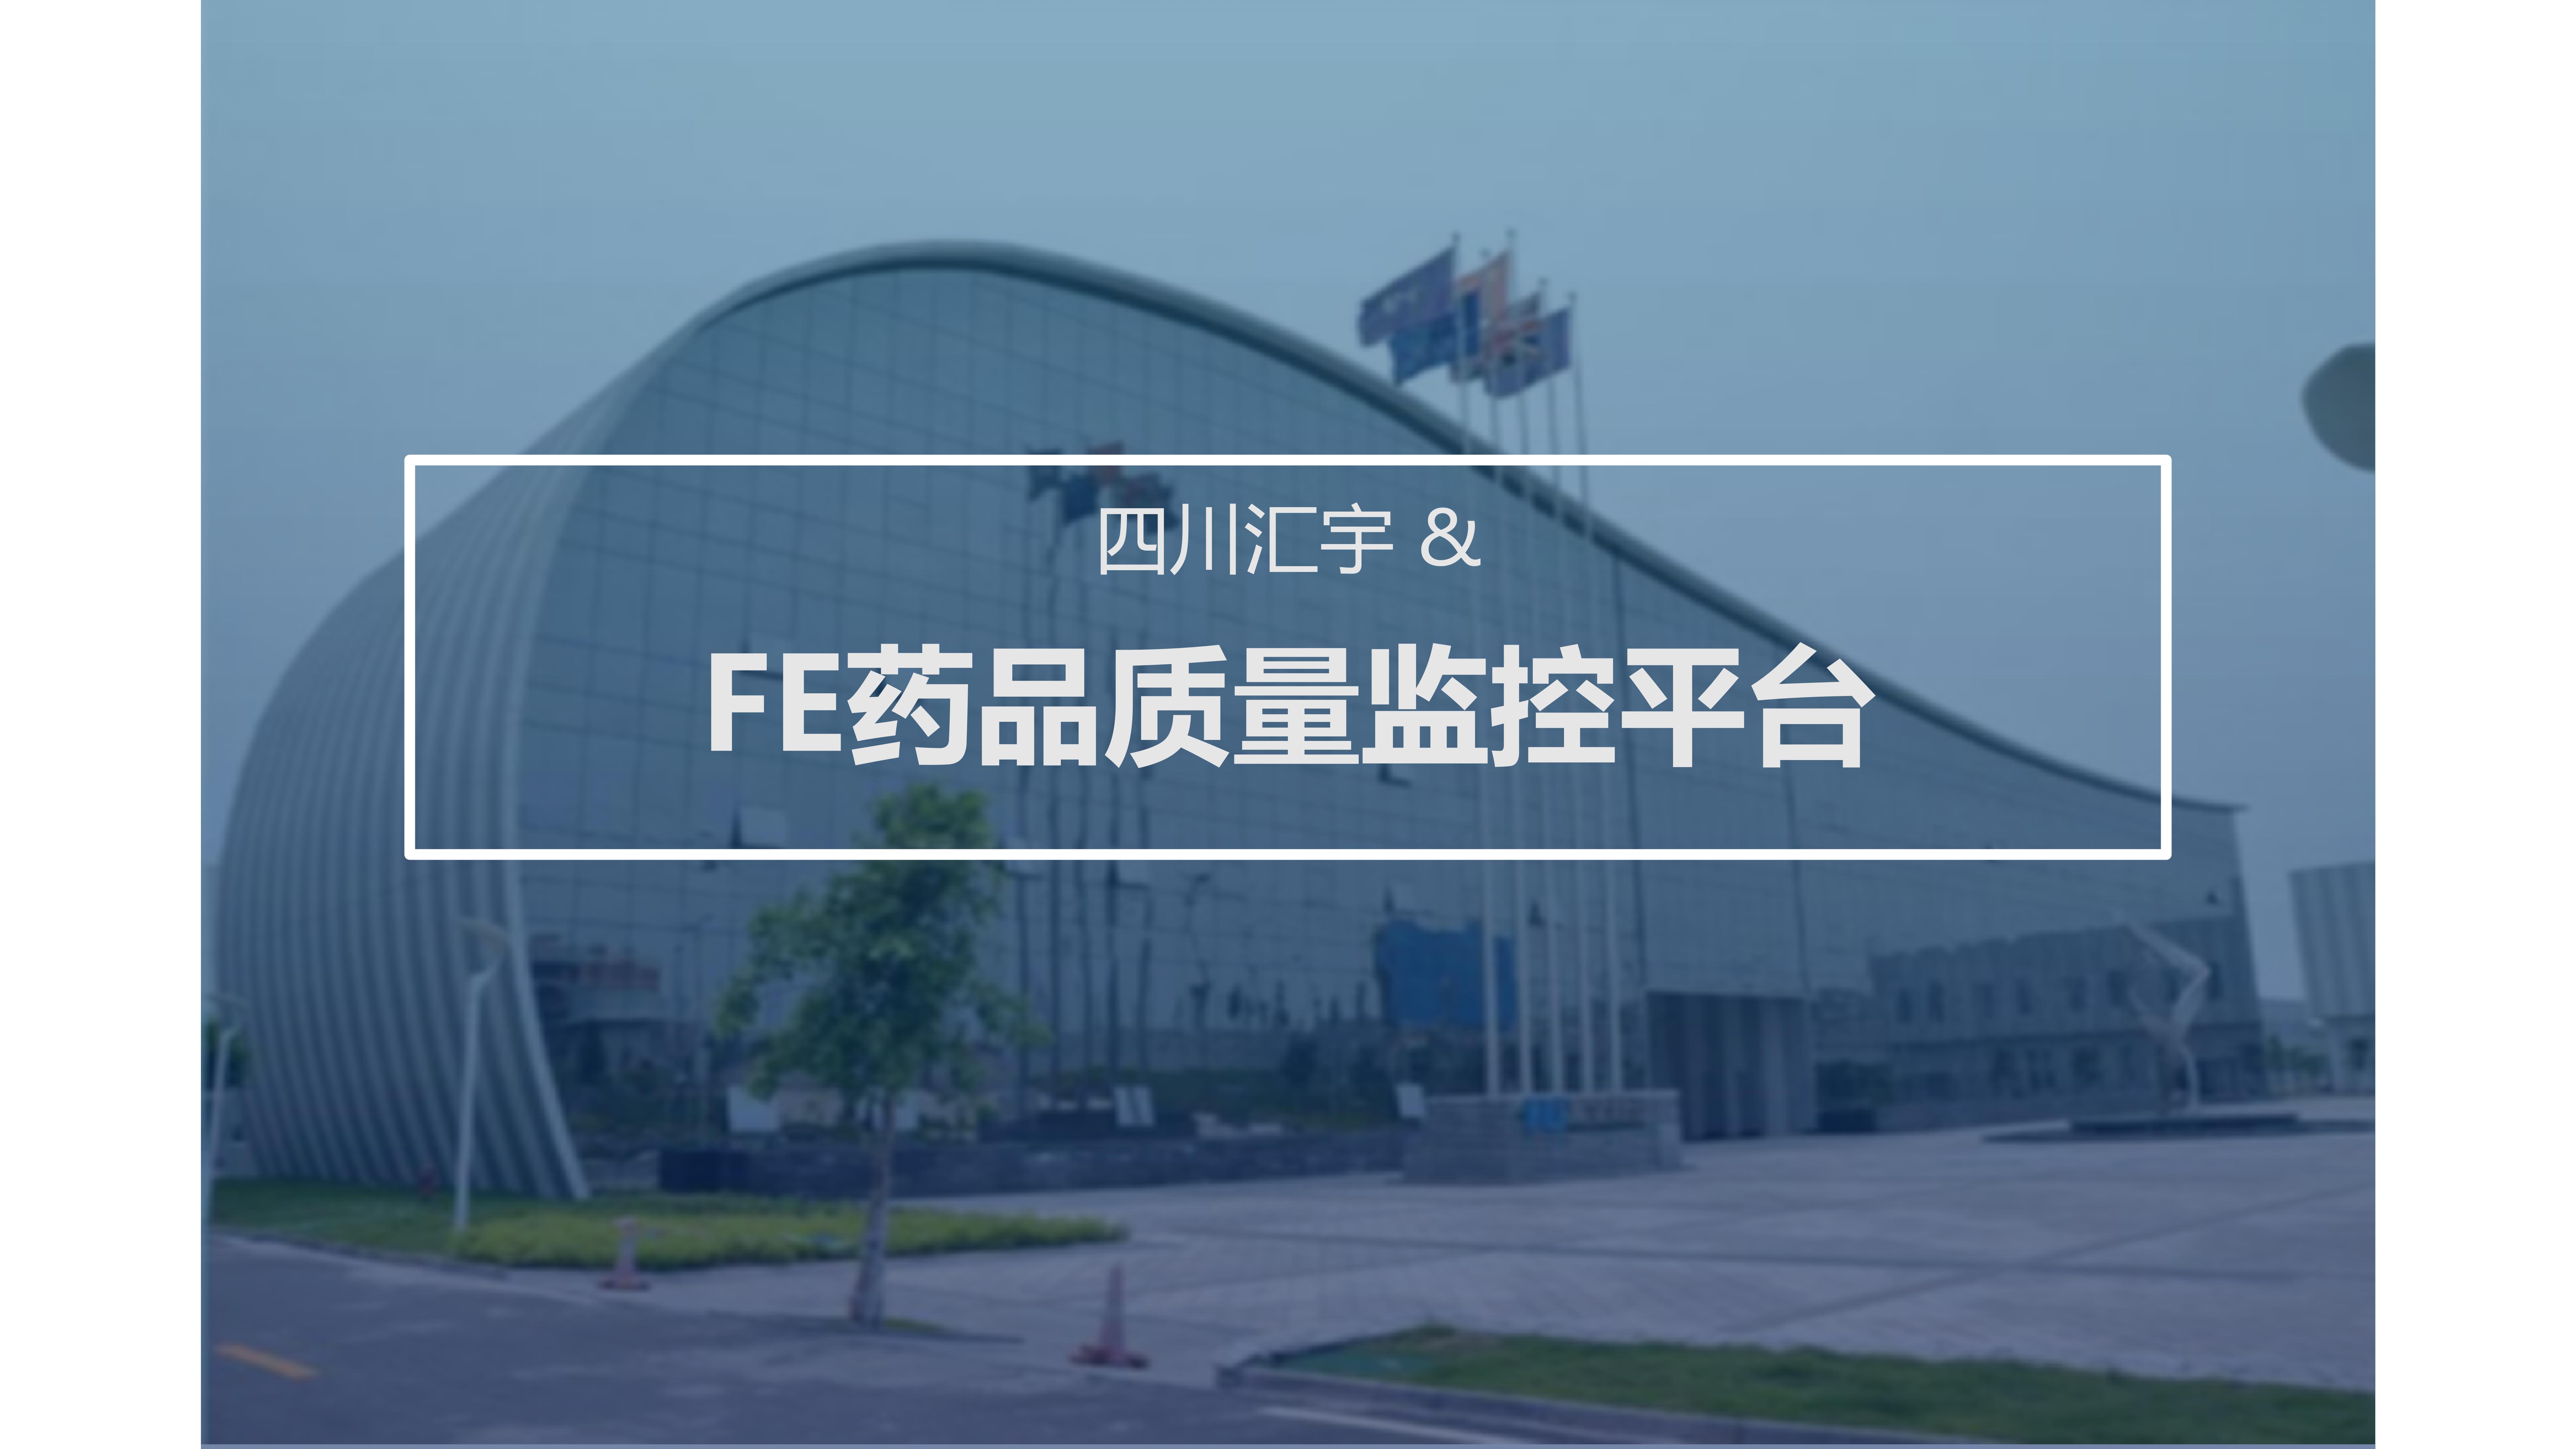 四川汇宇 & FE药品质量监控平台